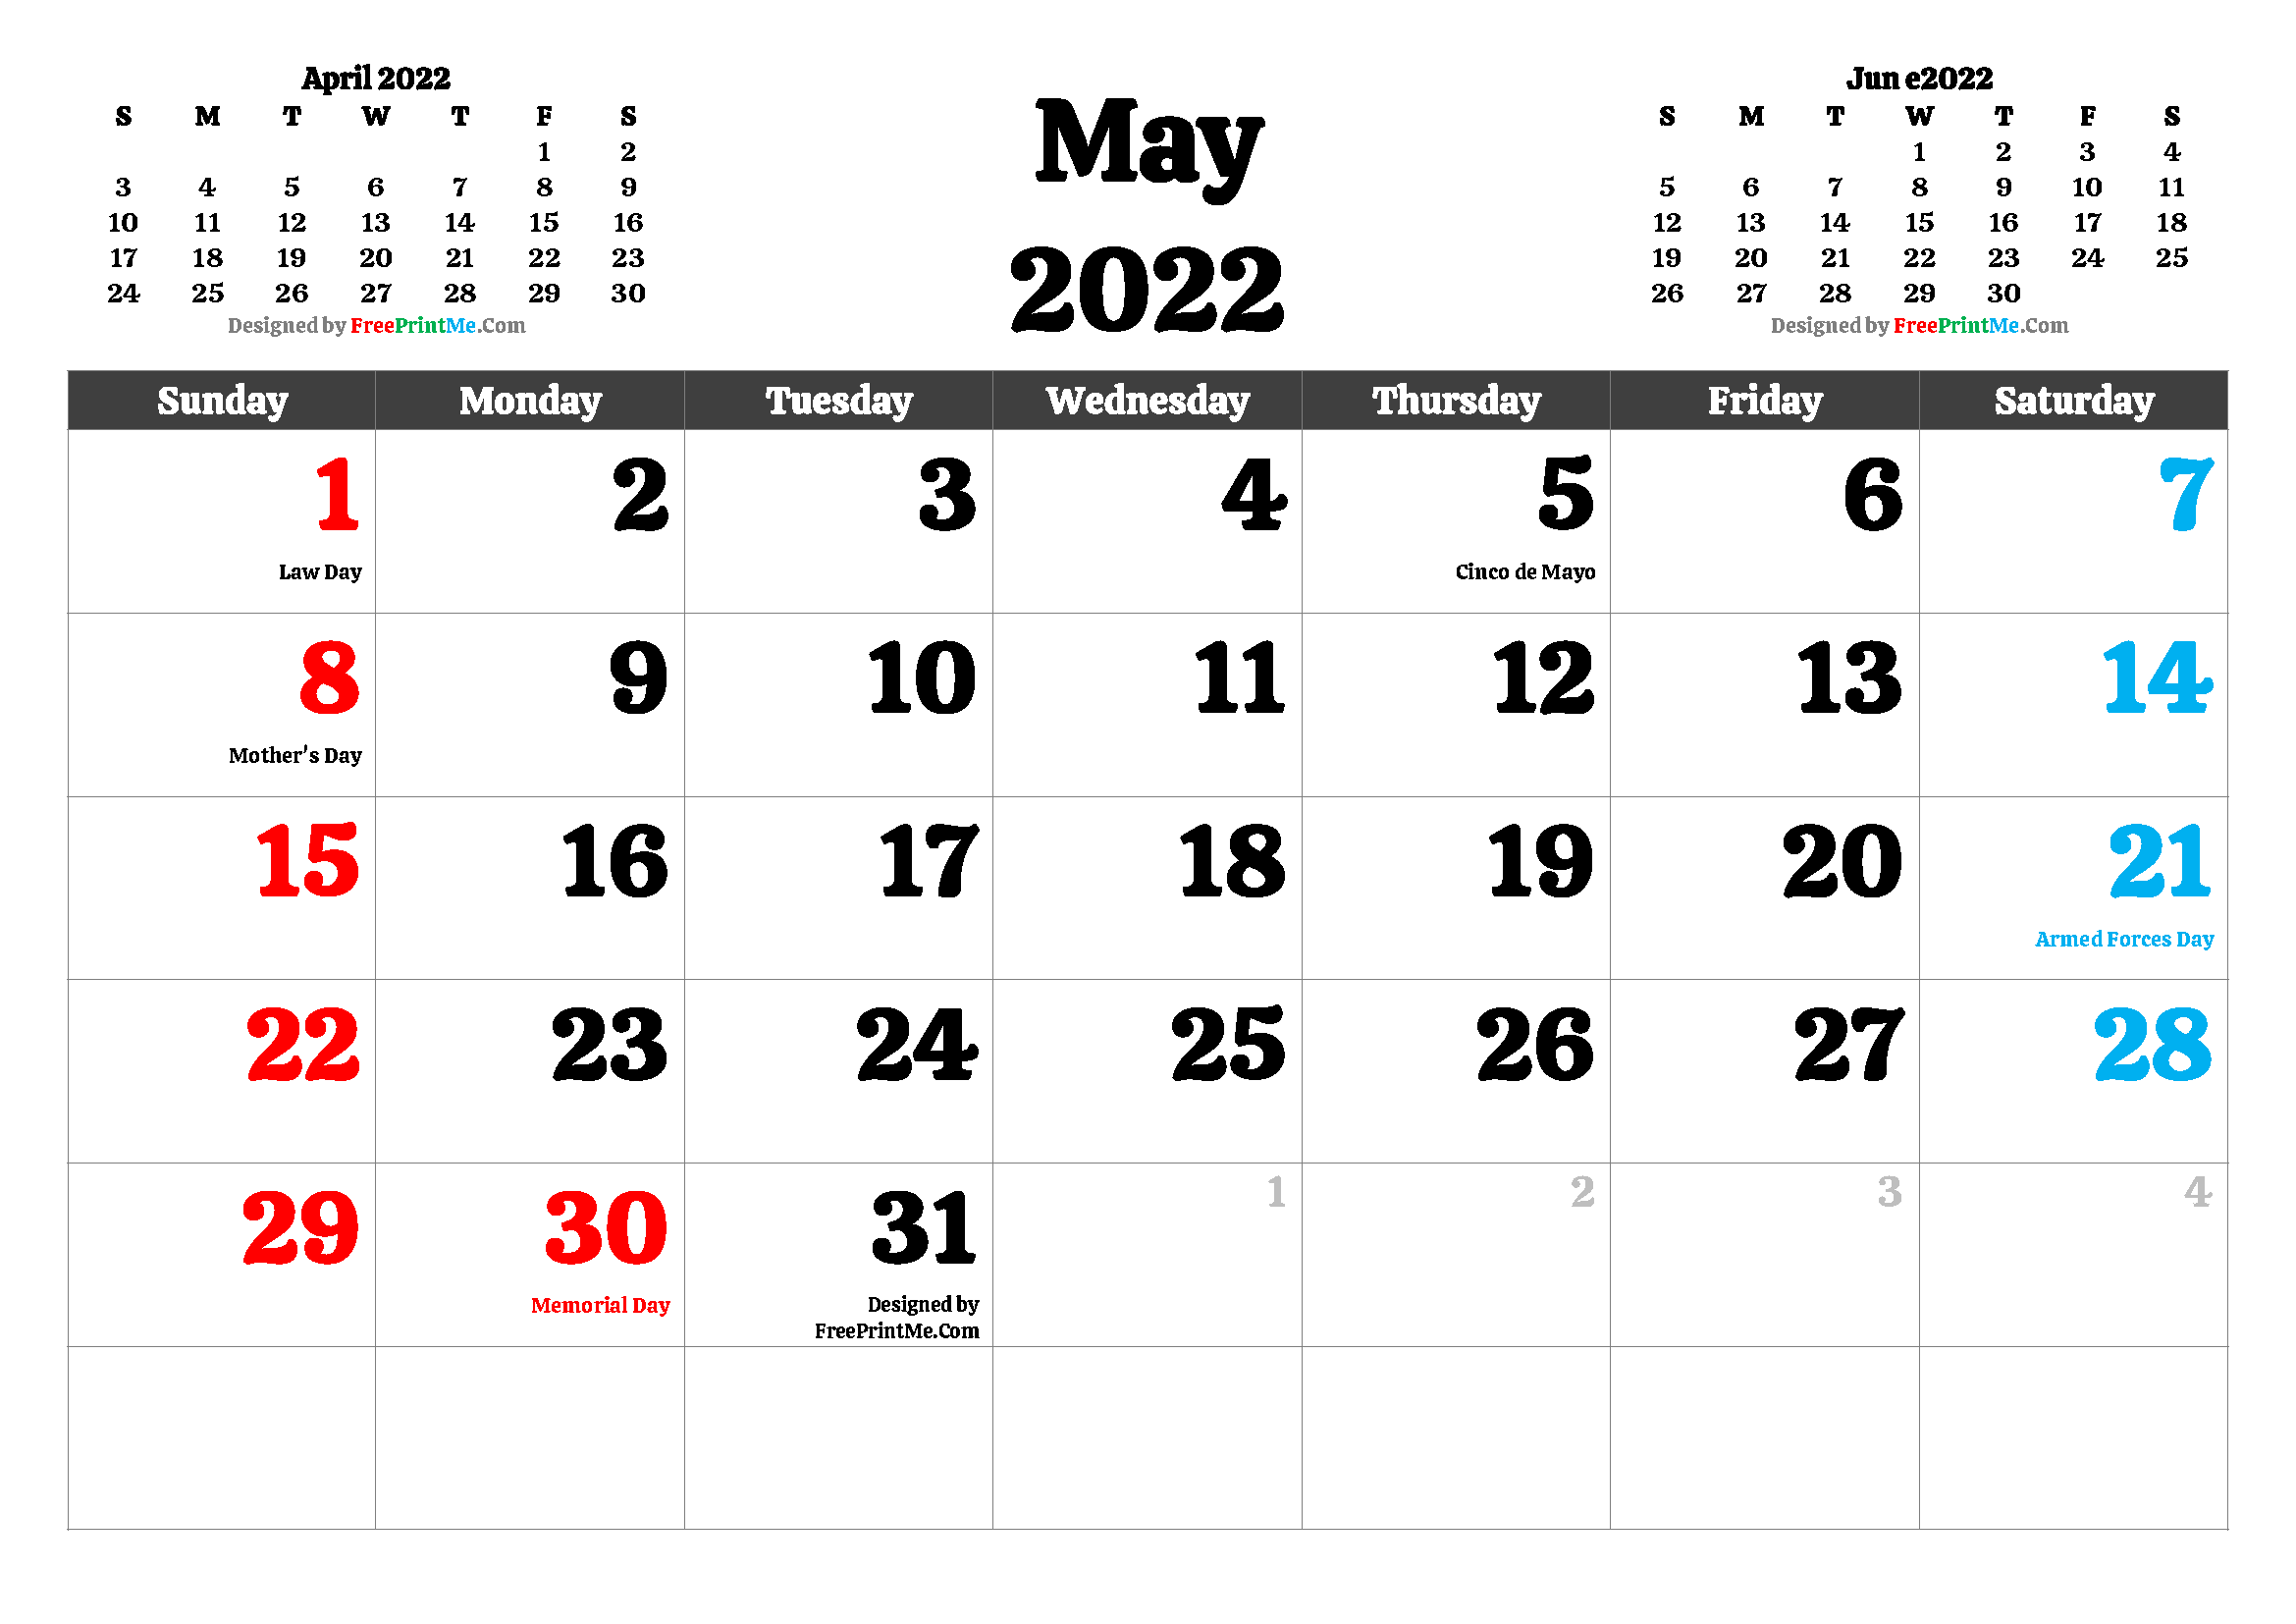 May 2022 Printable Calendar Pdf Free Printable May 2022 Calendar Pdf And Image